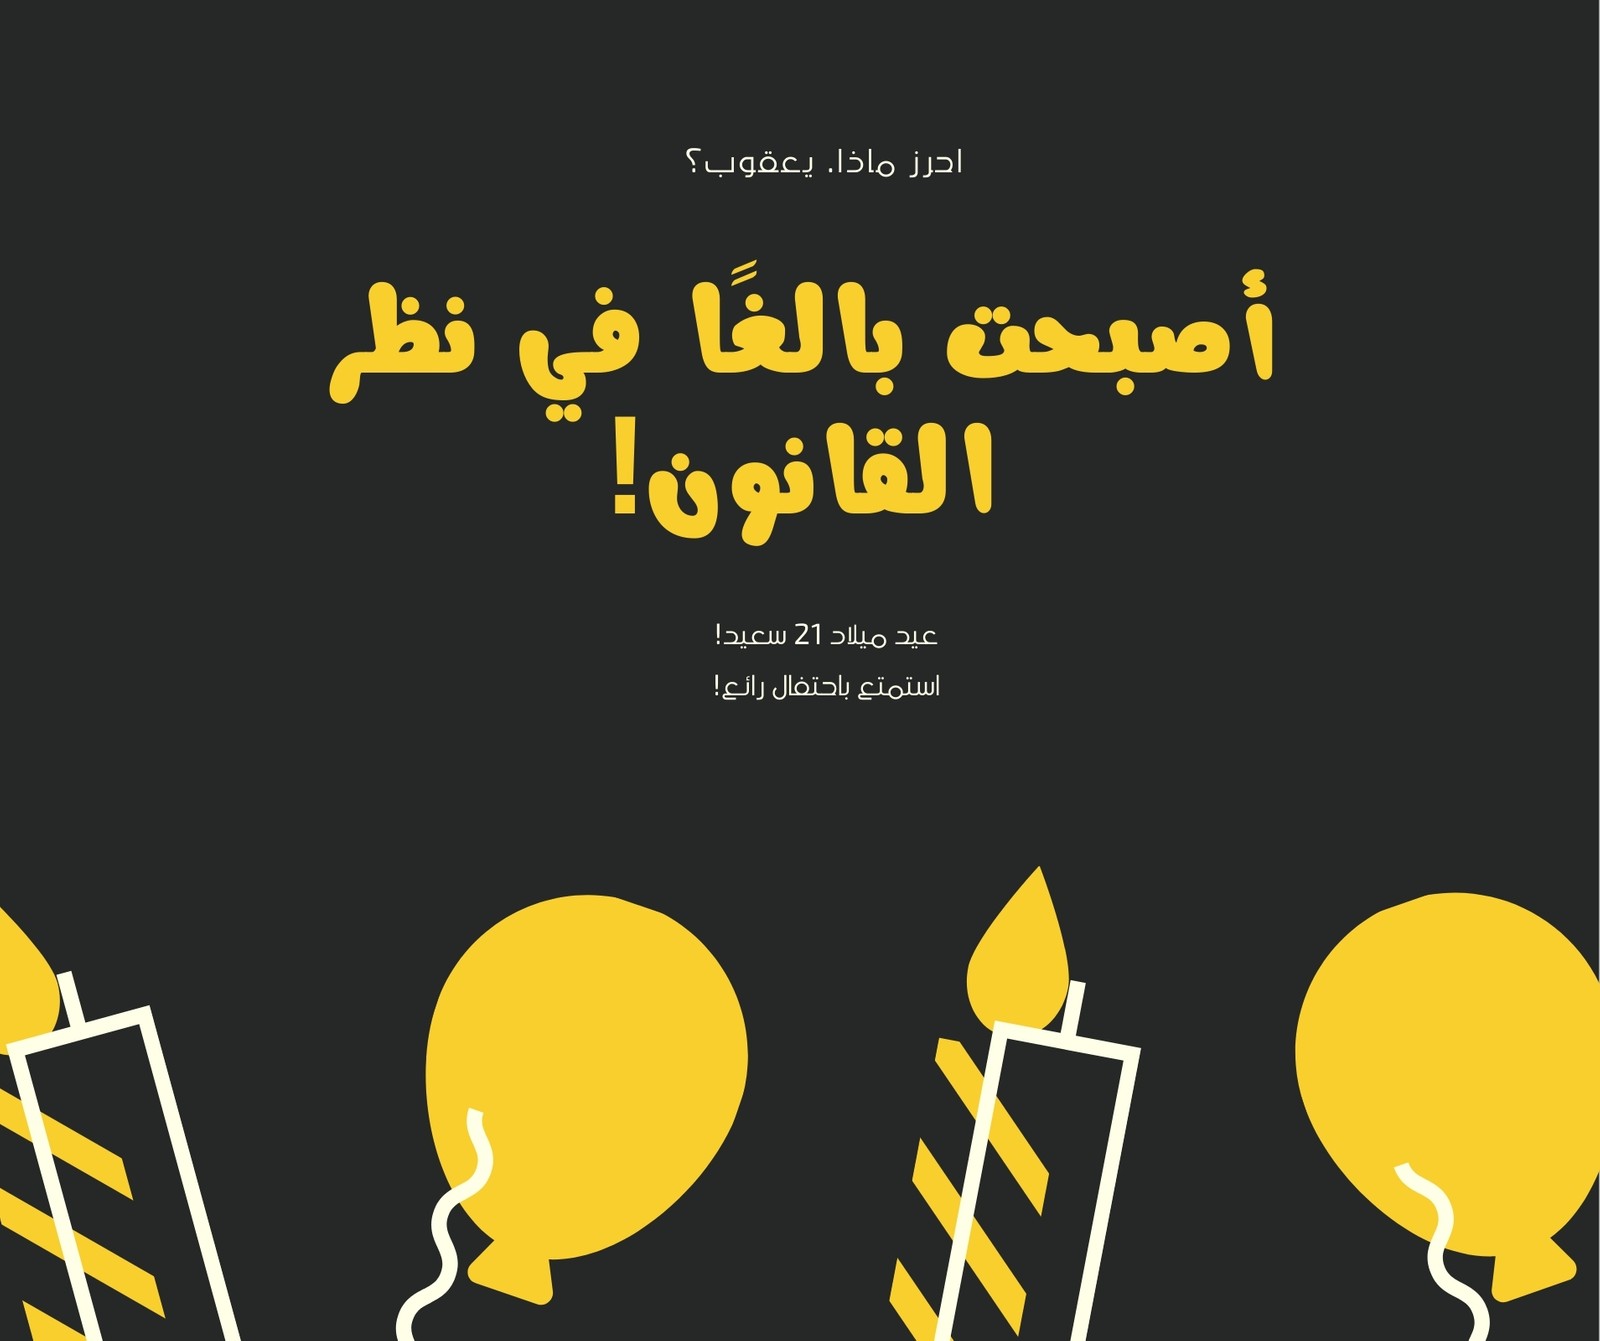 منشور فيسبوك أصفر وأسود مرسوم أيقونة حفل عيد ميلاد